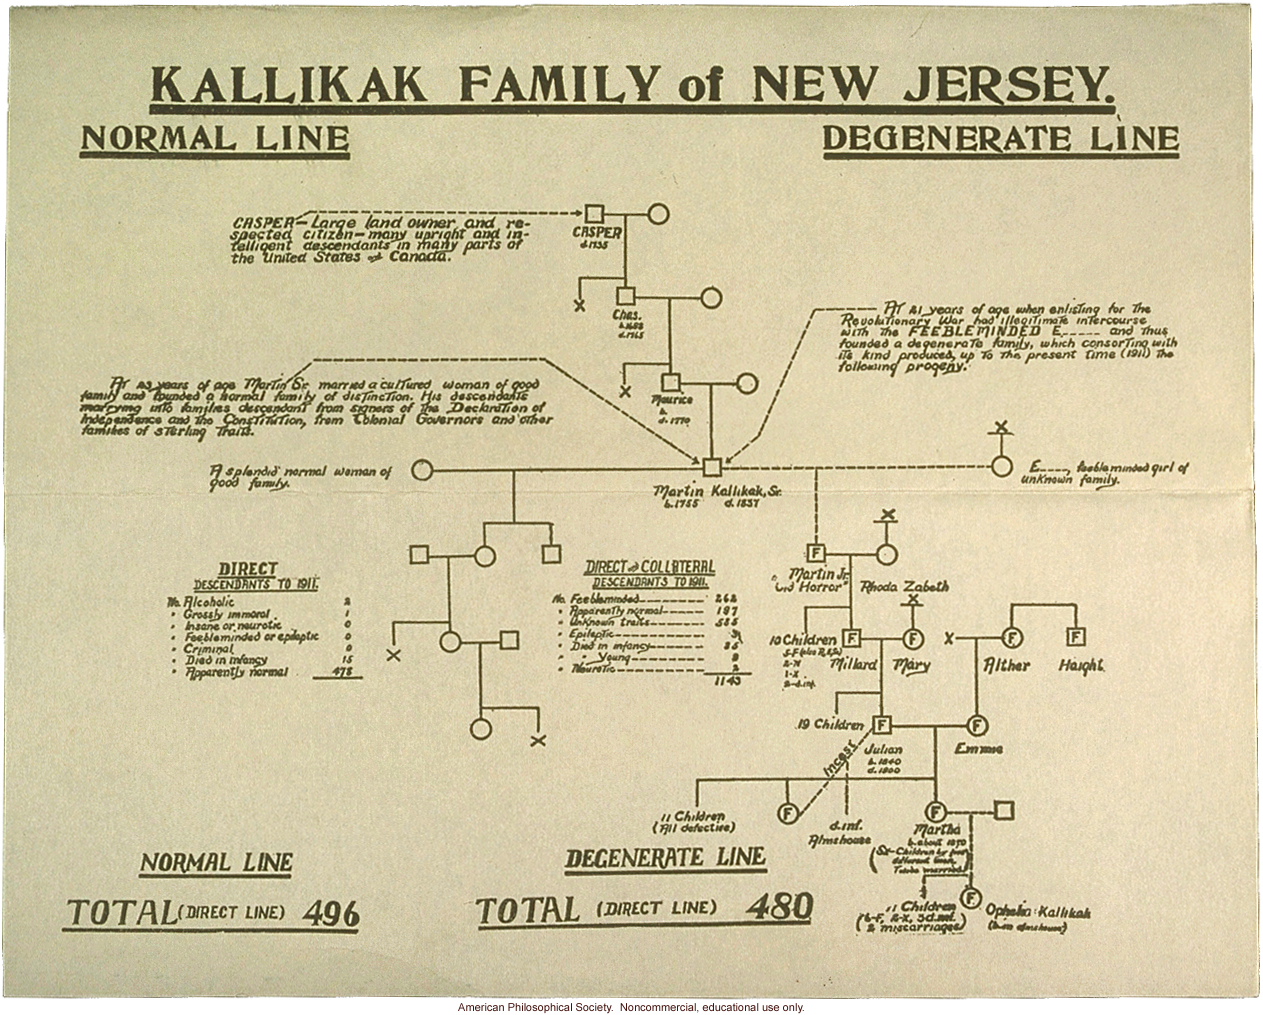 Kallikak family pedigree